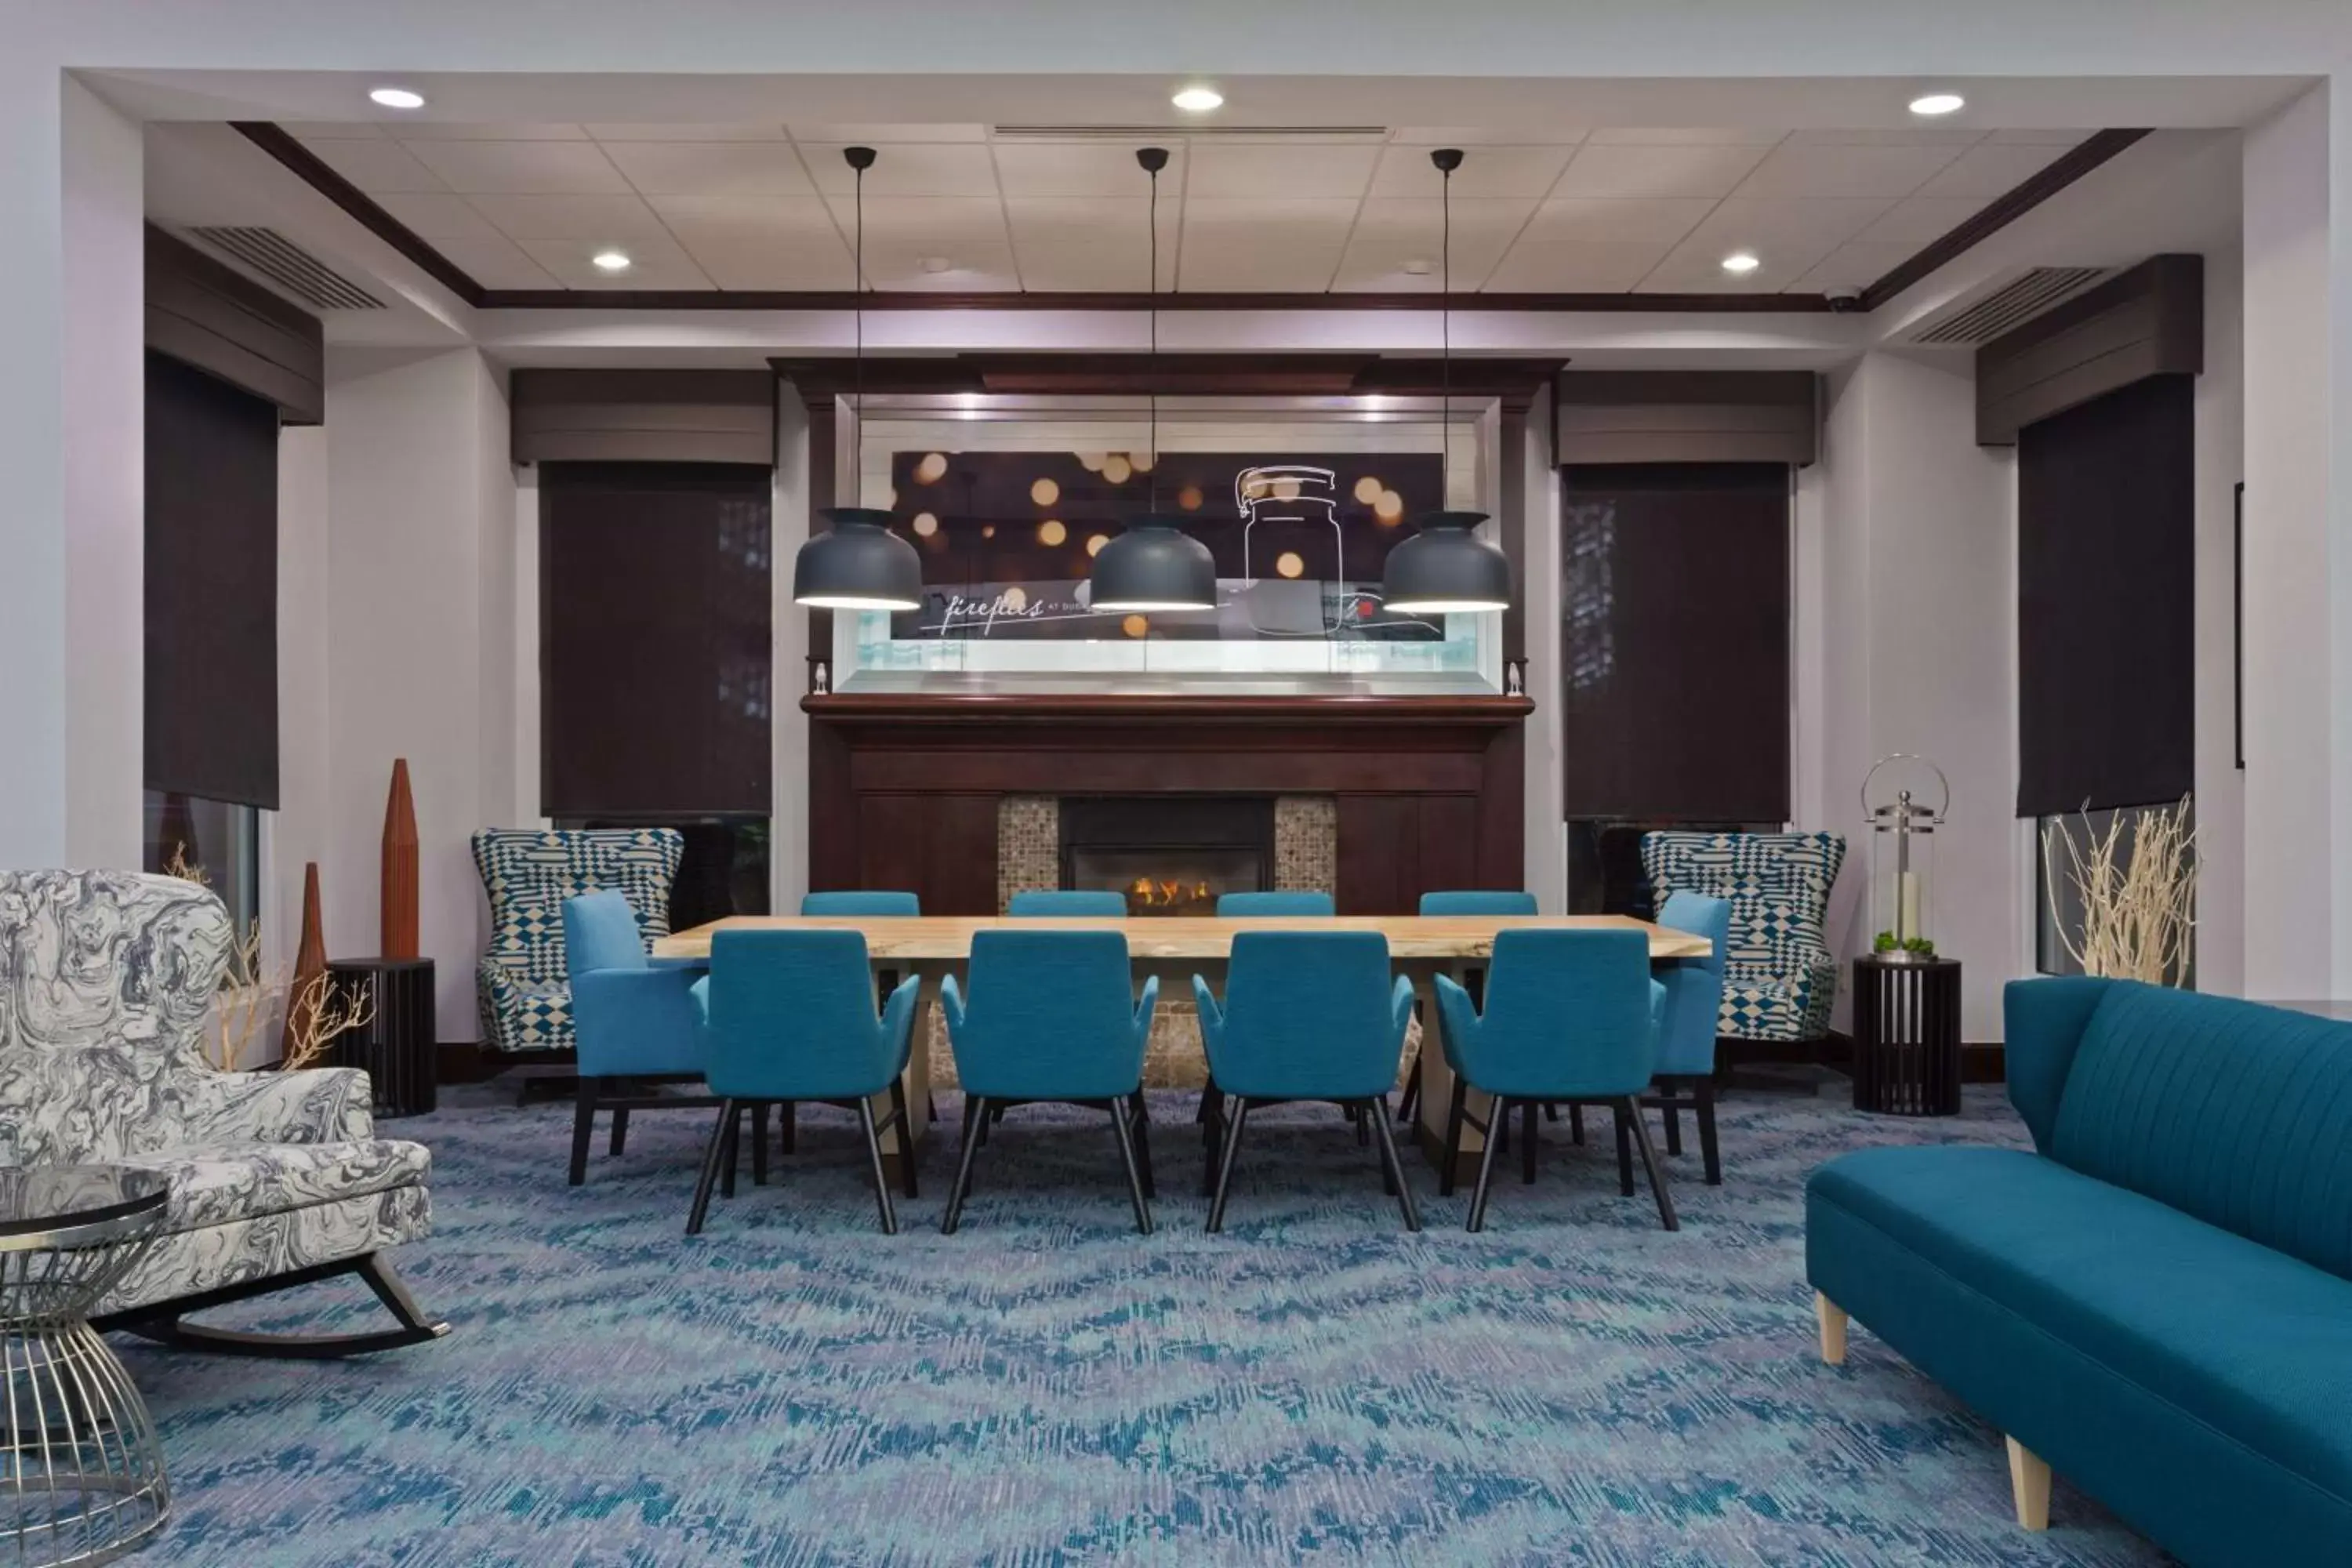 Lobby or reception in Hilton Garden Inn Annapolis